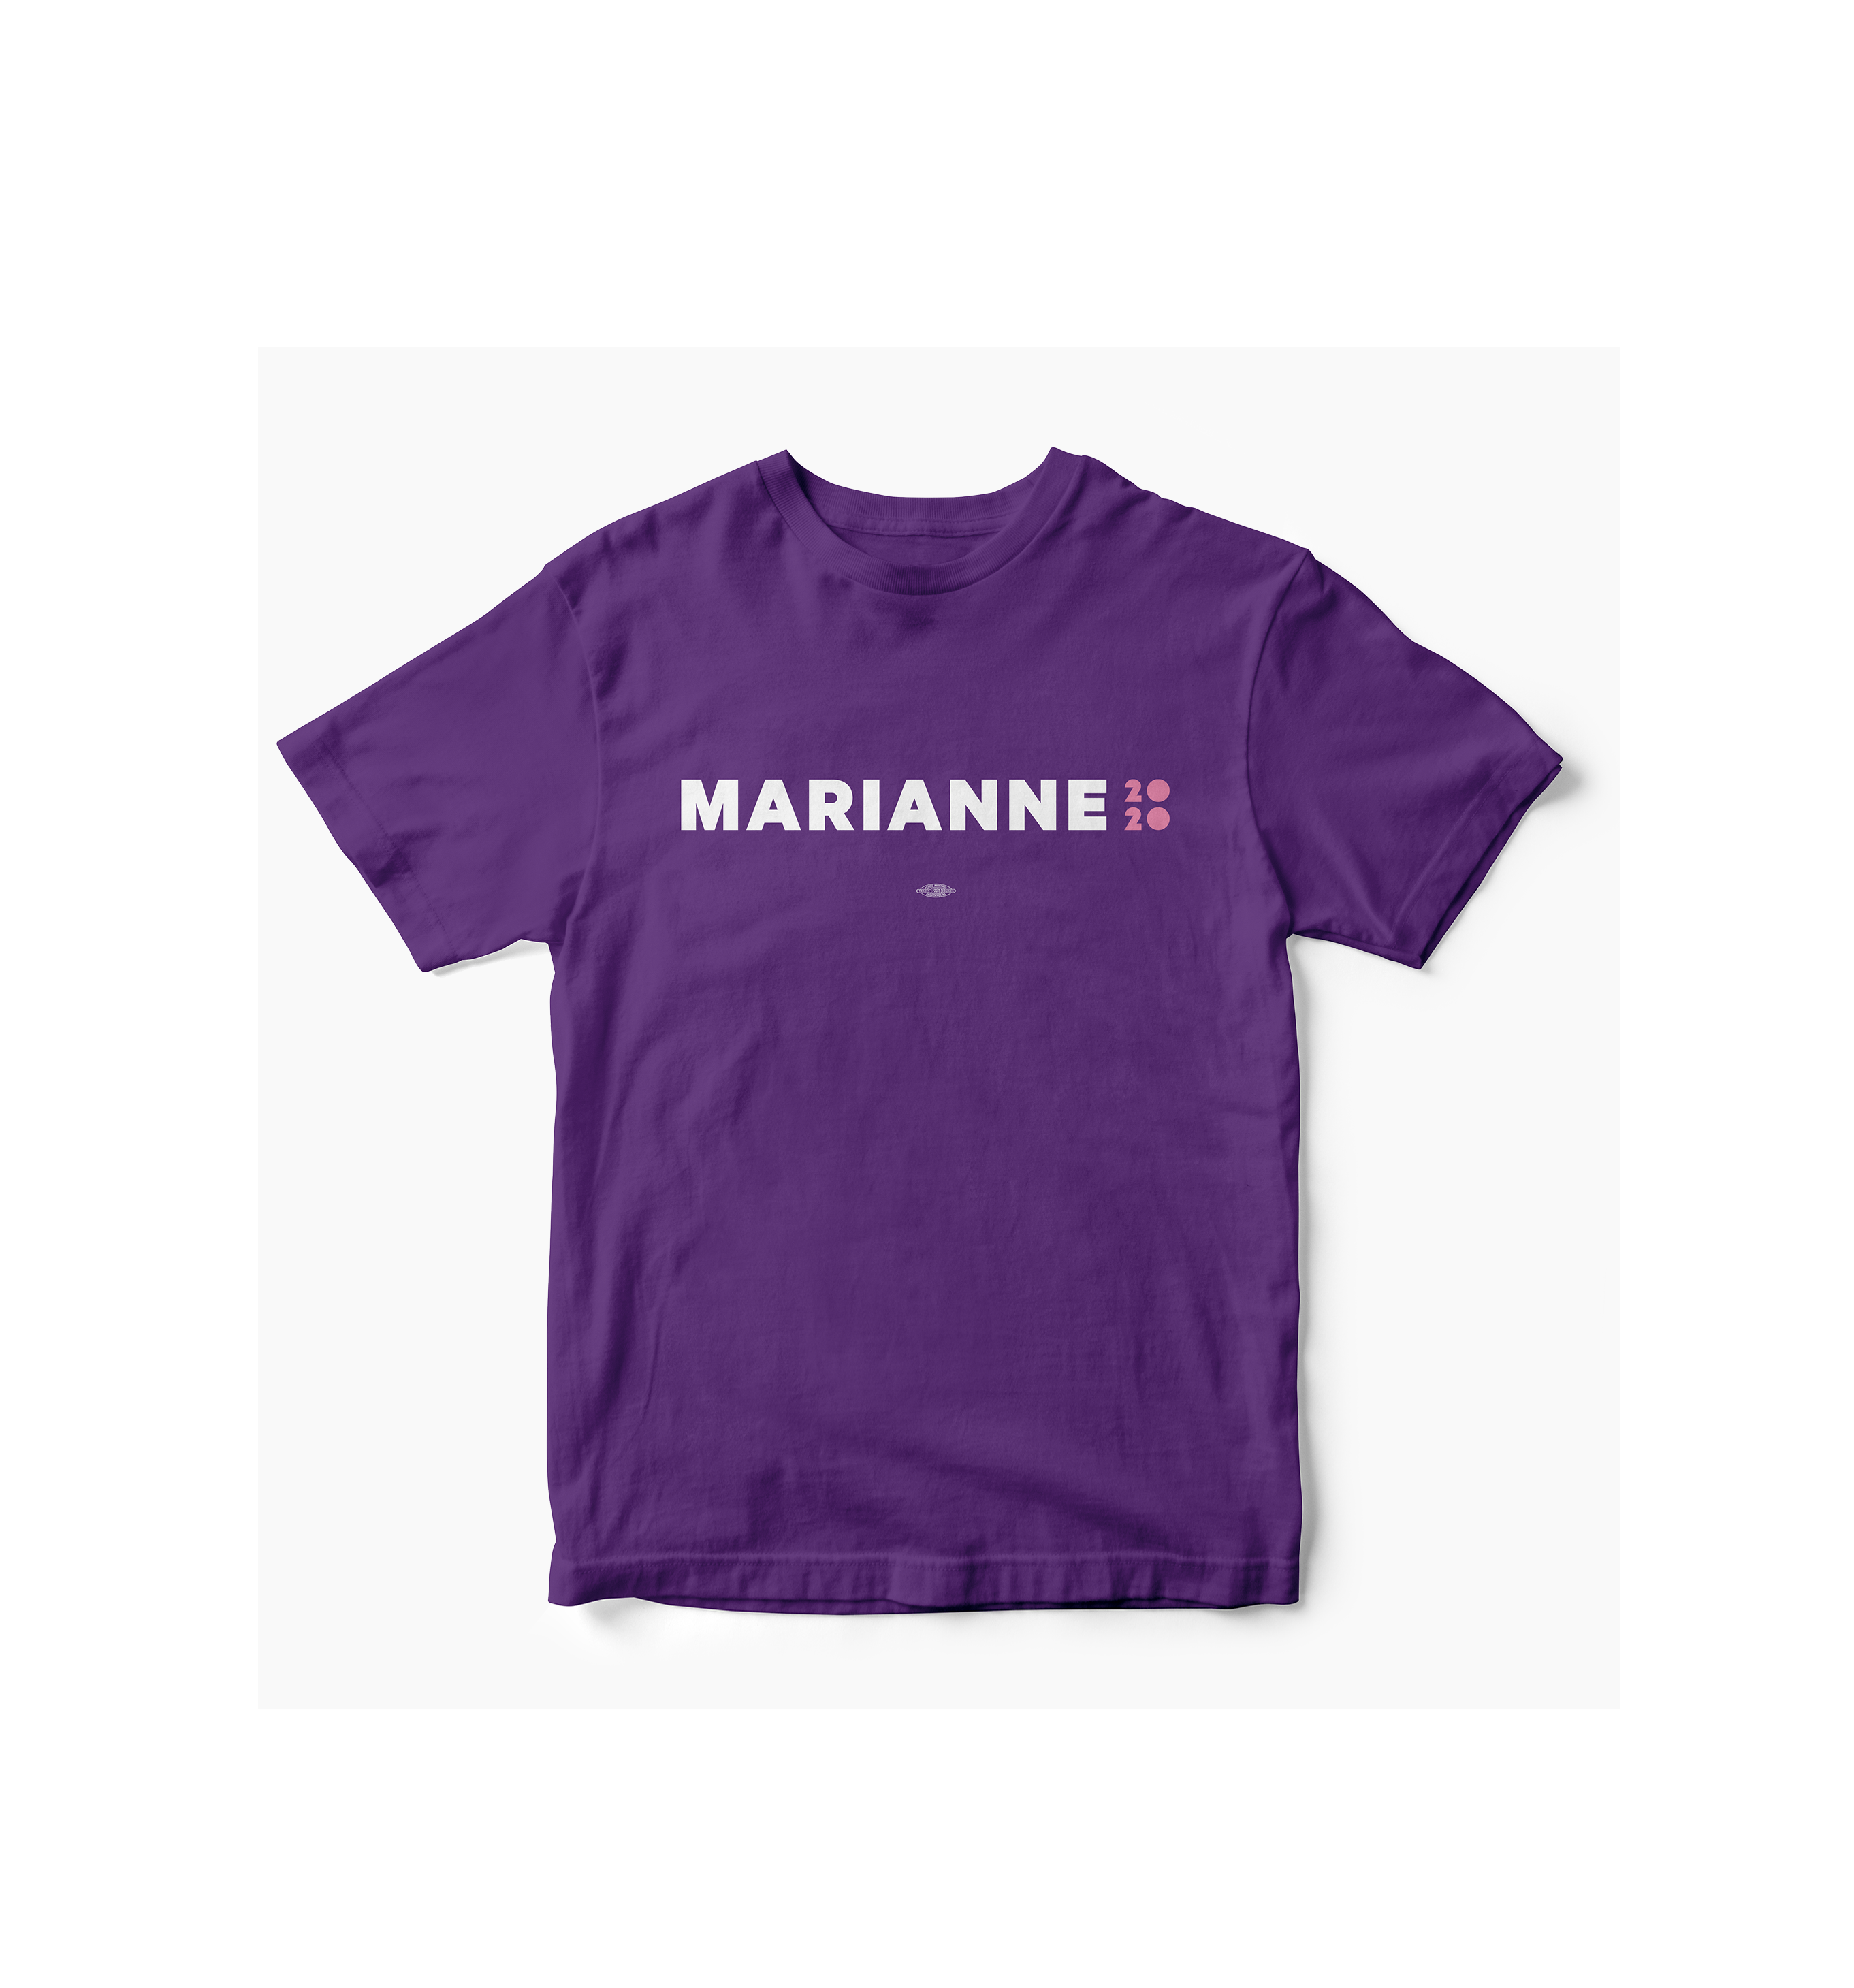 Marianne 2020 Purple Tee